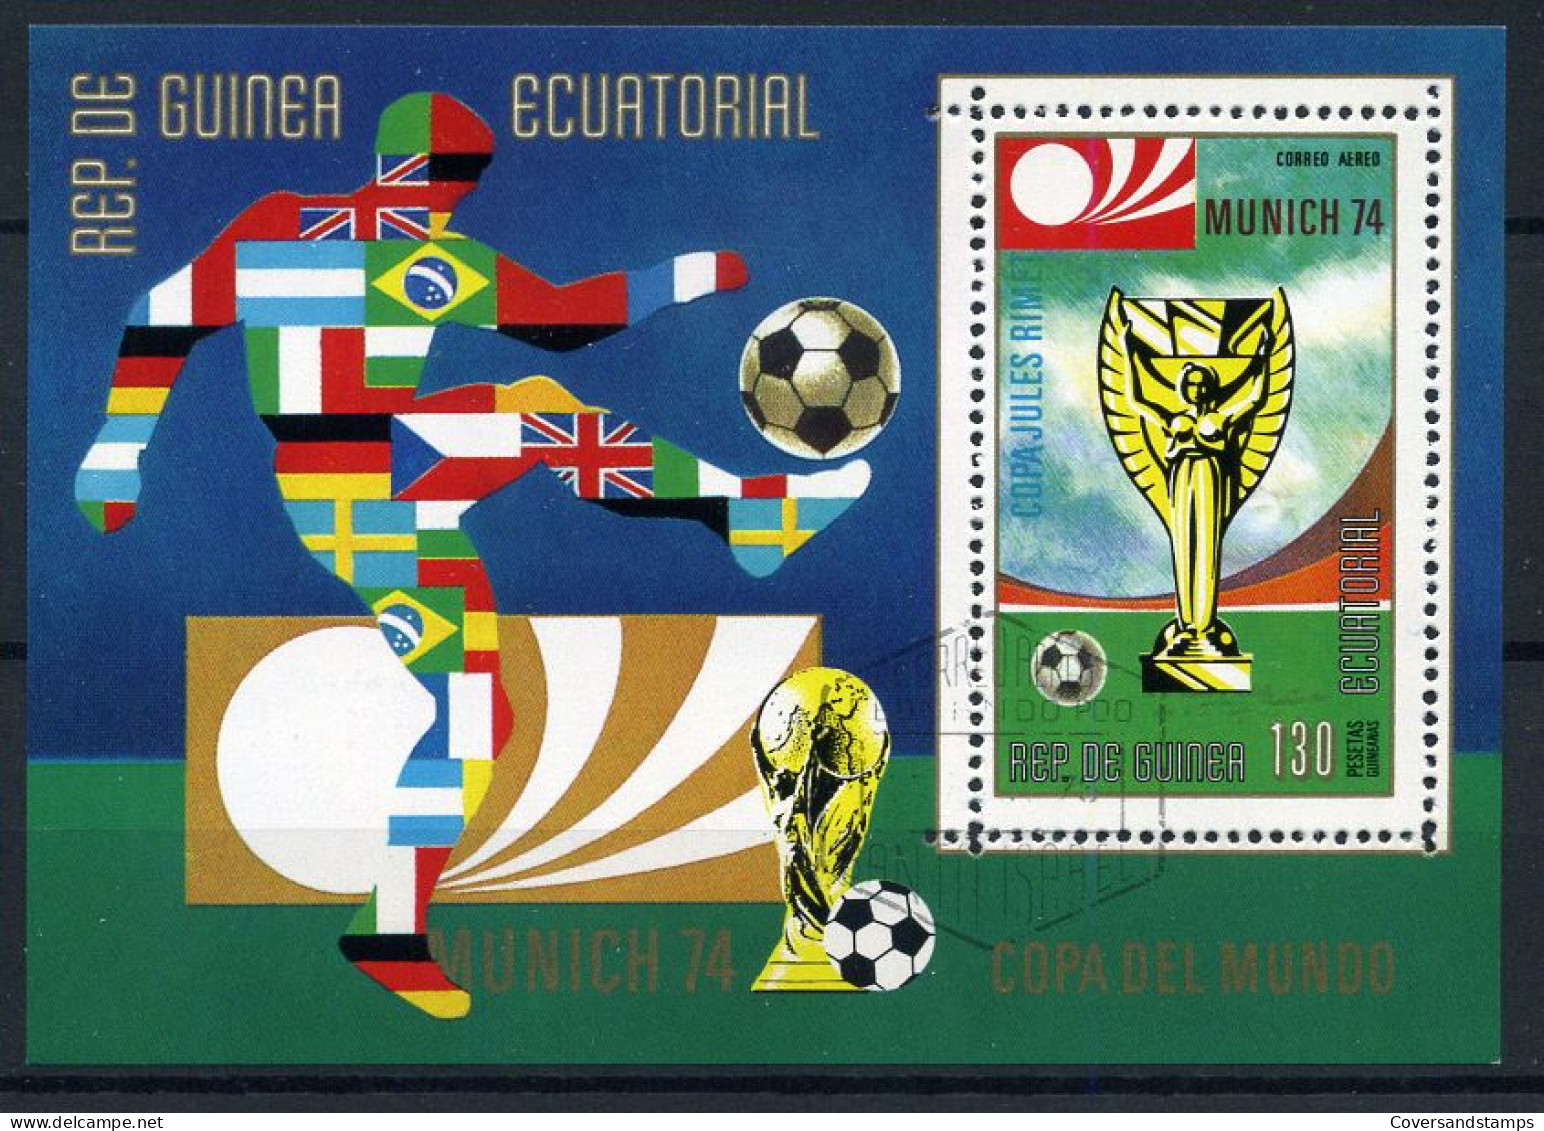 Republica De Guinea Ecuatorial - Munich 74, Copa Del Mundo - 1974 – West Germany